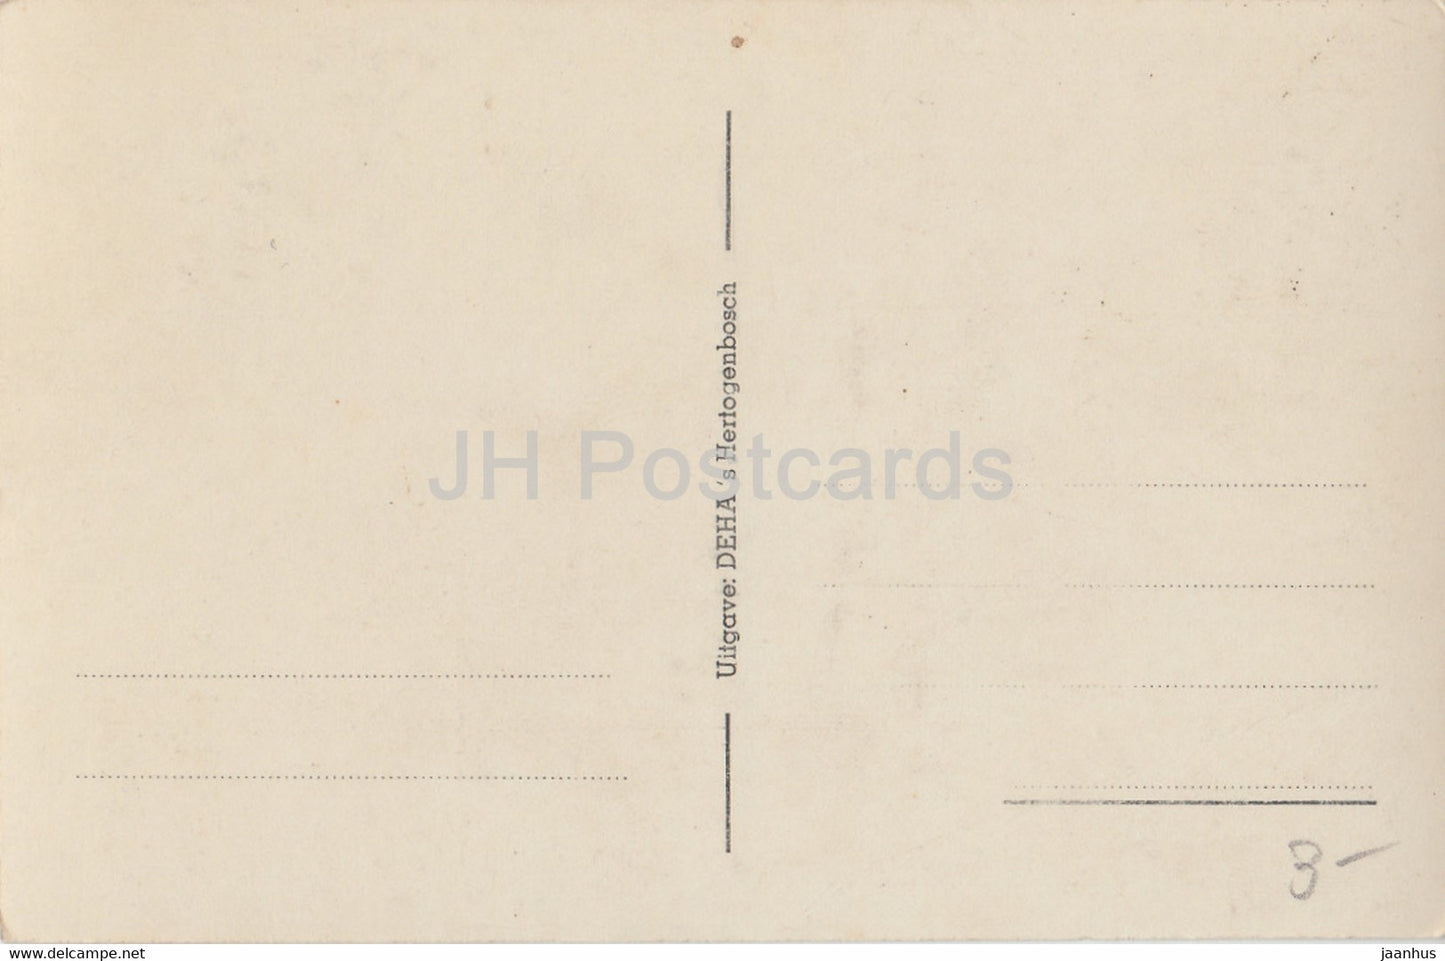 Hoogkoor met Koorgestoelte en Bisschoptroon St. Jans Basiliek S Hertogenbosch – alte Postkarte – Niederlande – unbenutzt